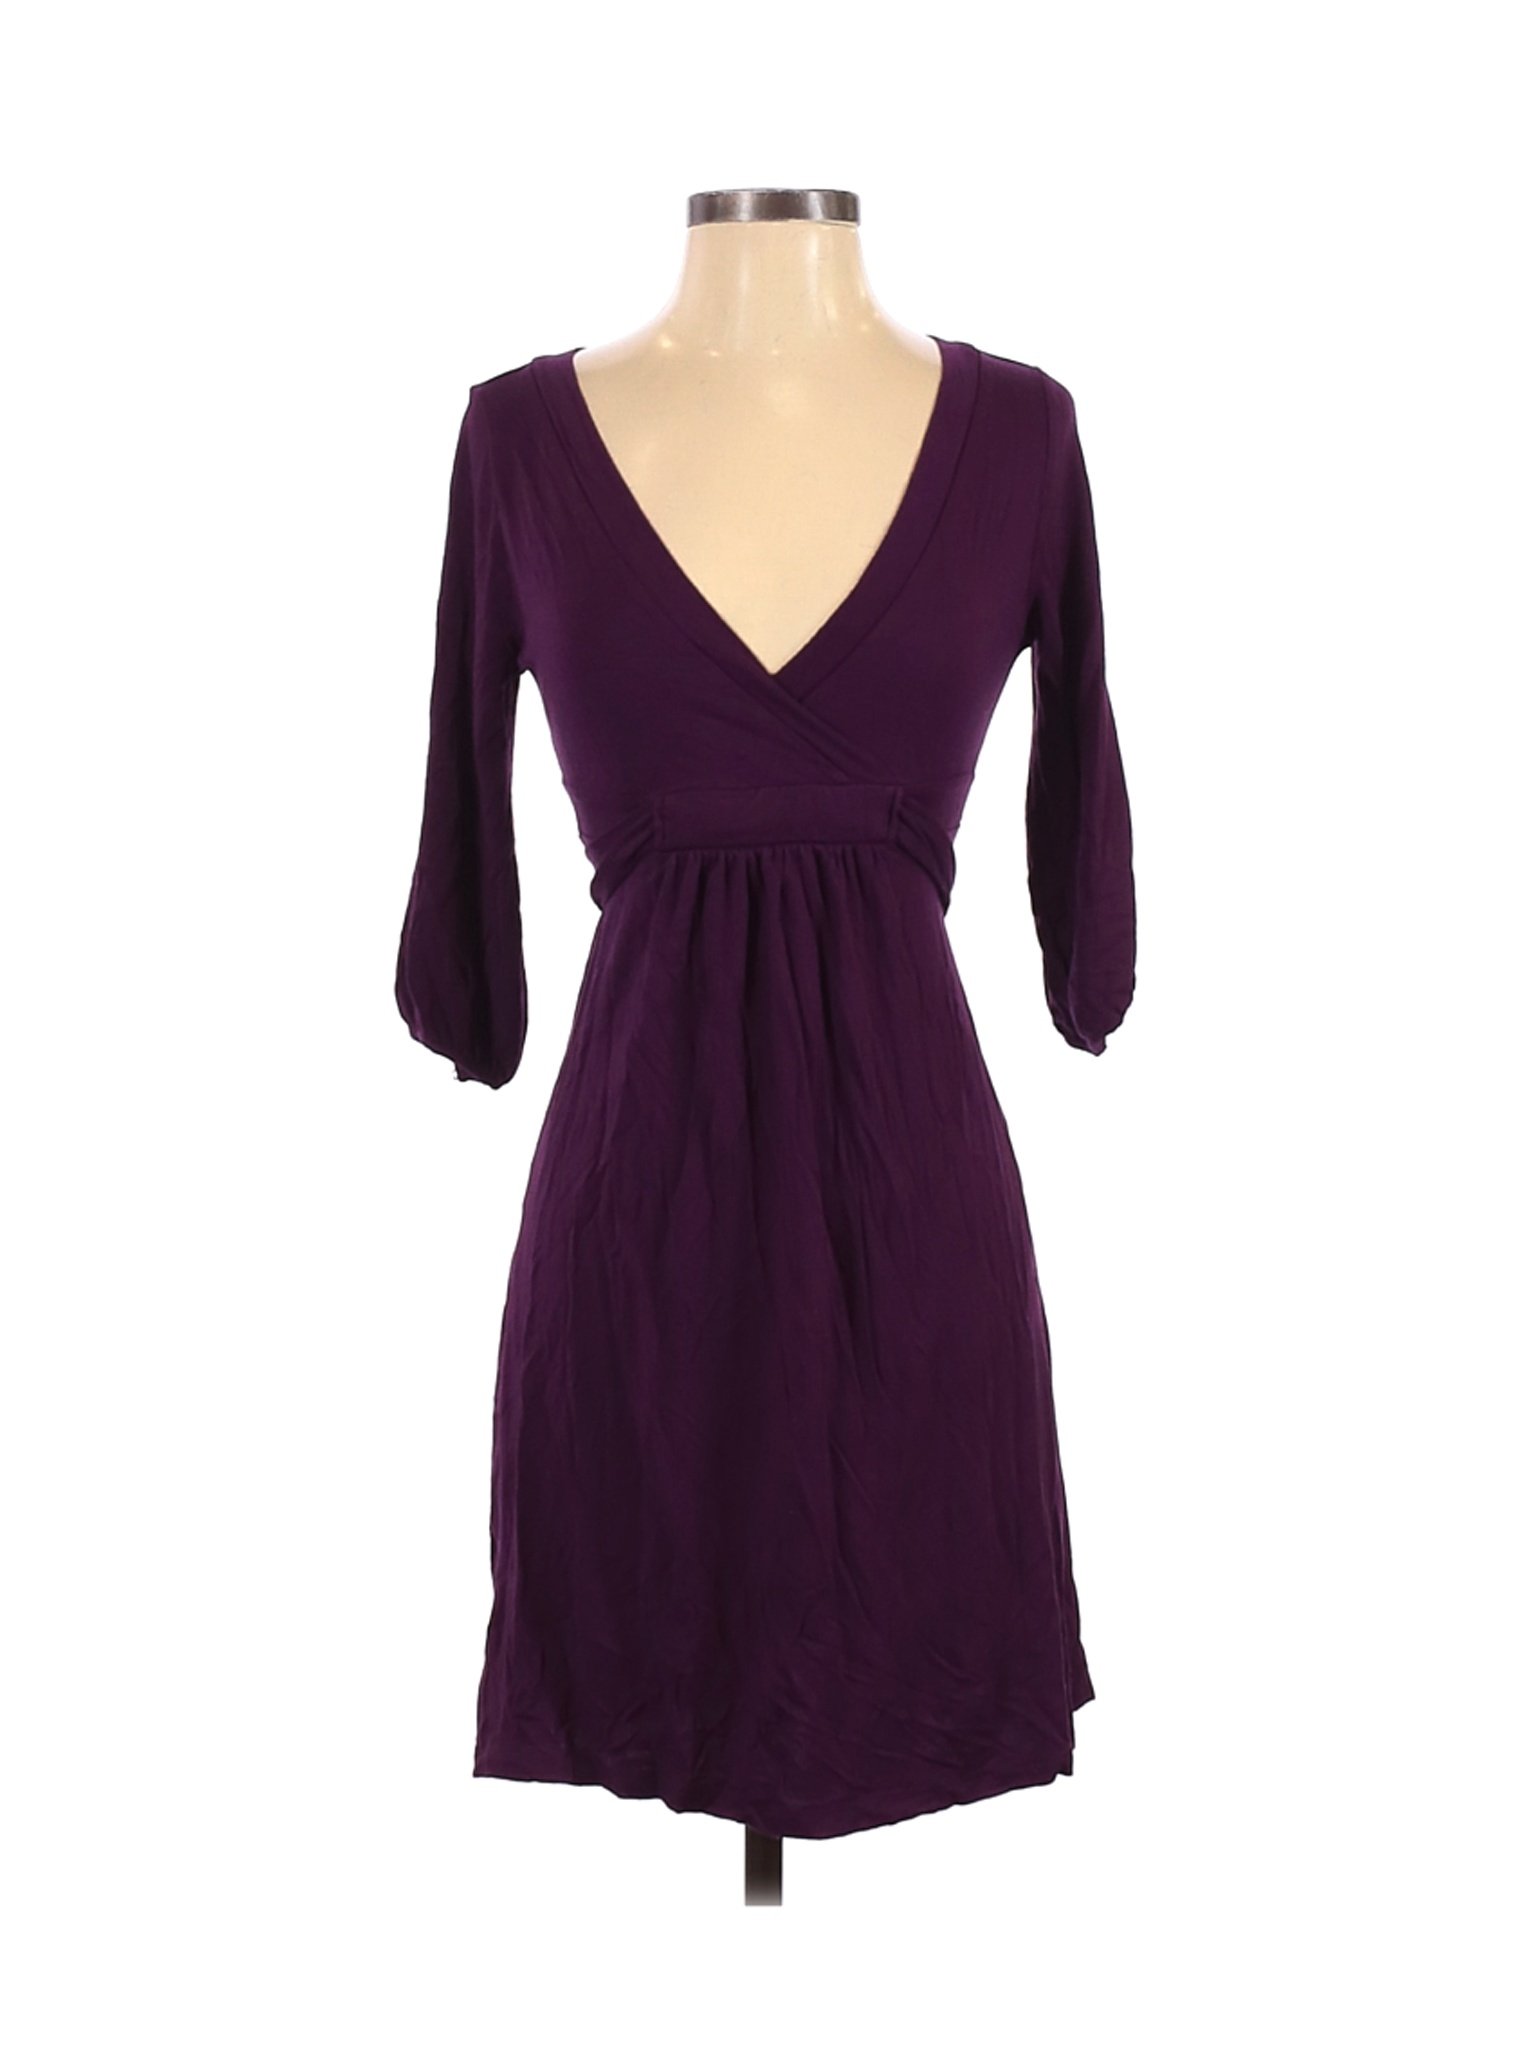 Old Navy Women Purple Casual Dress XS | eBay